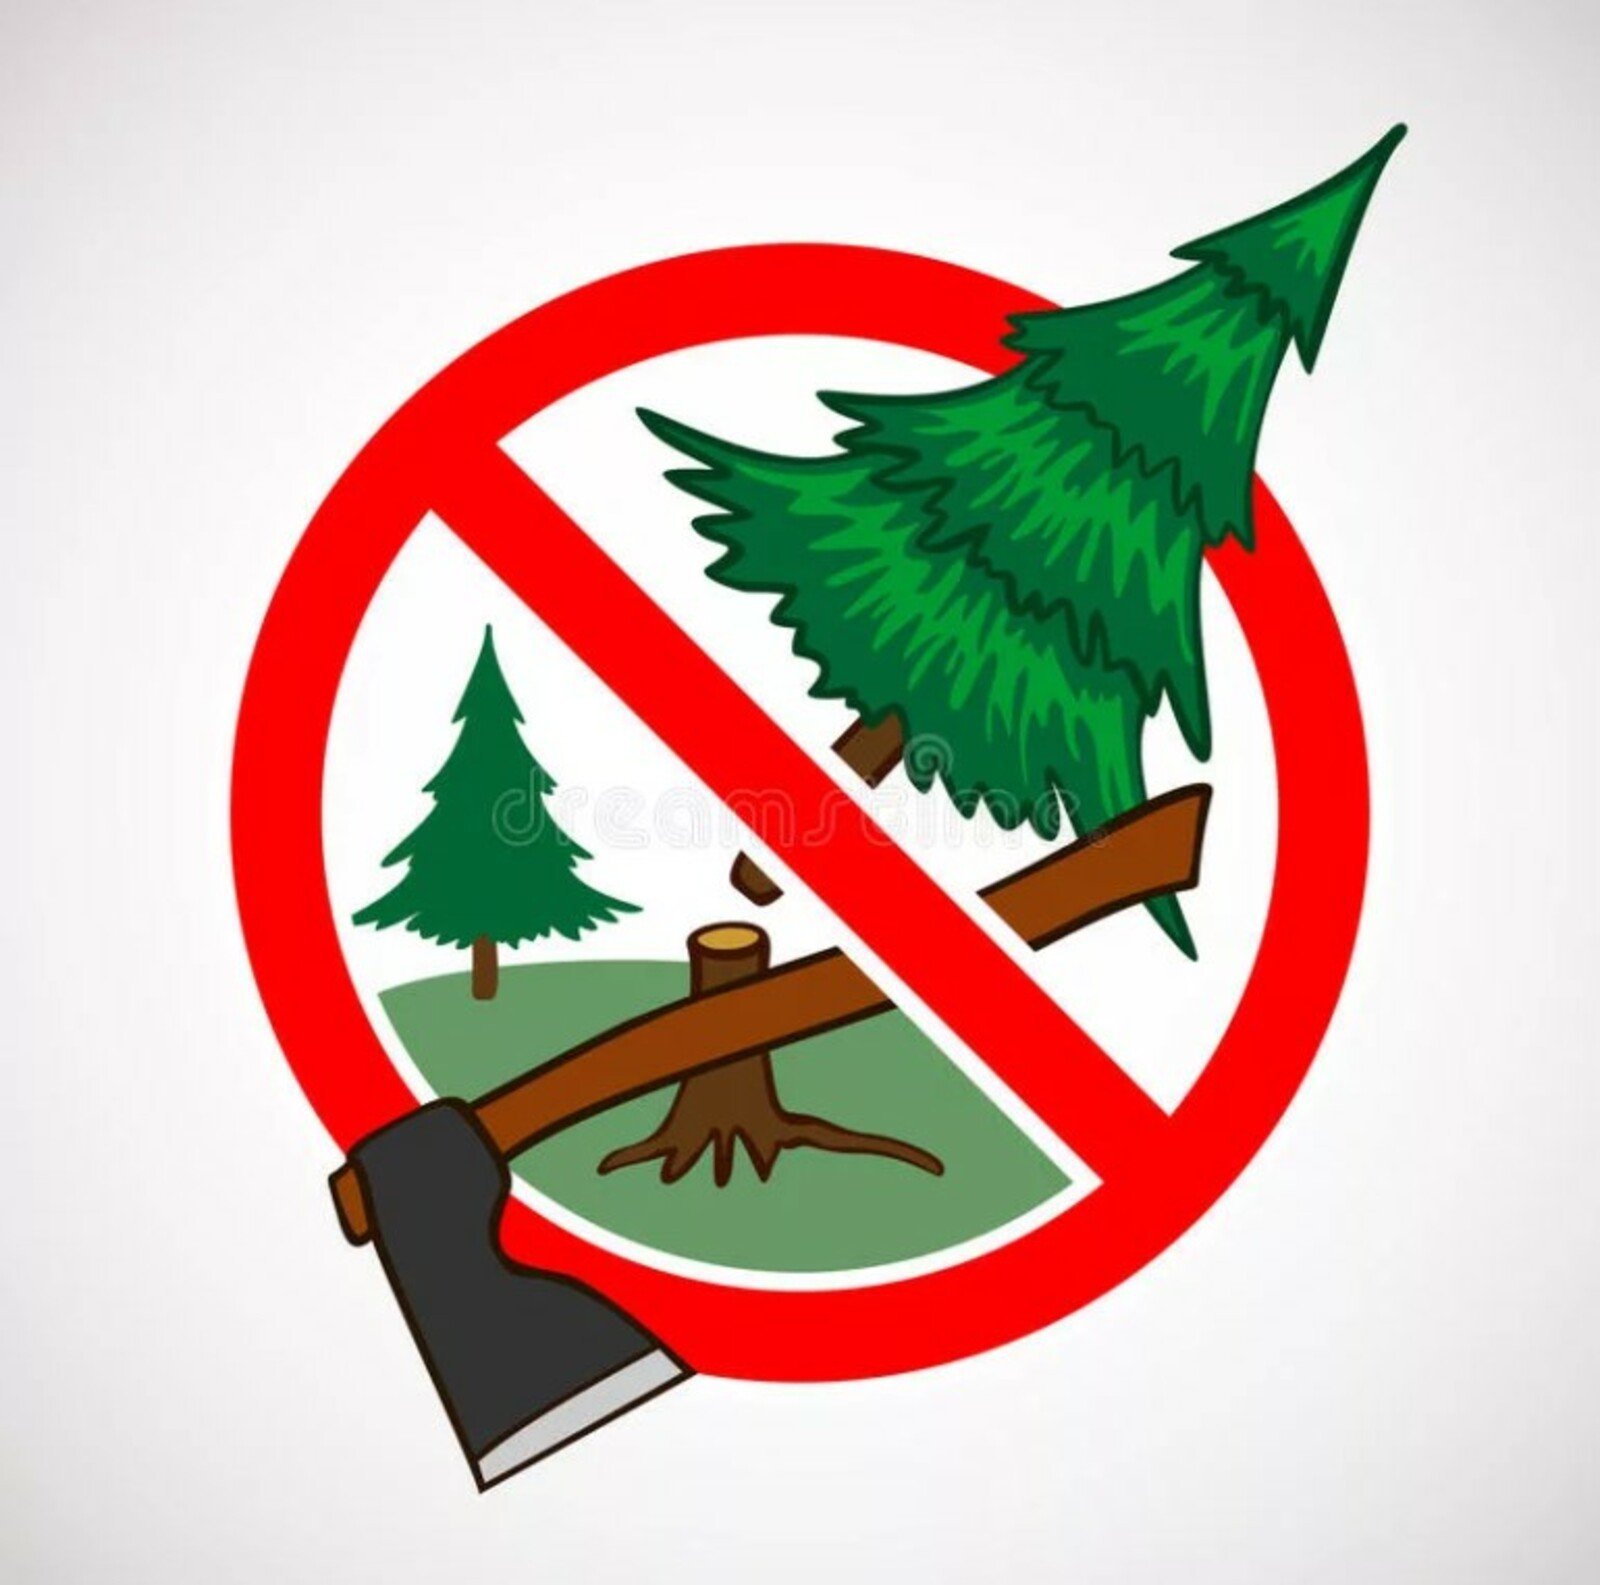 Охрана леса от вырубки. Знак вырубка леса запрещена. Нельзя рубить деревья. Не рубите деревья. Не вырубайте деревья.